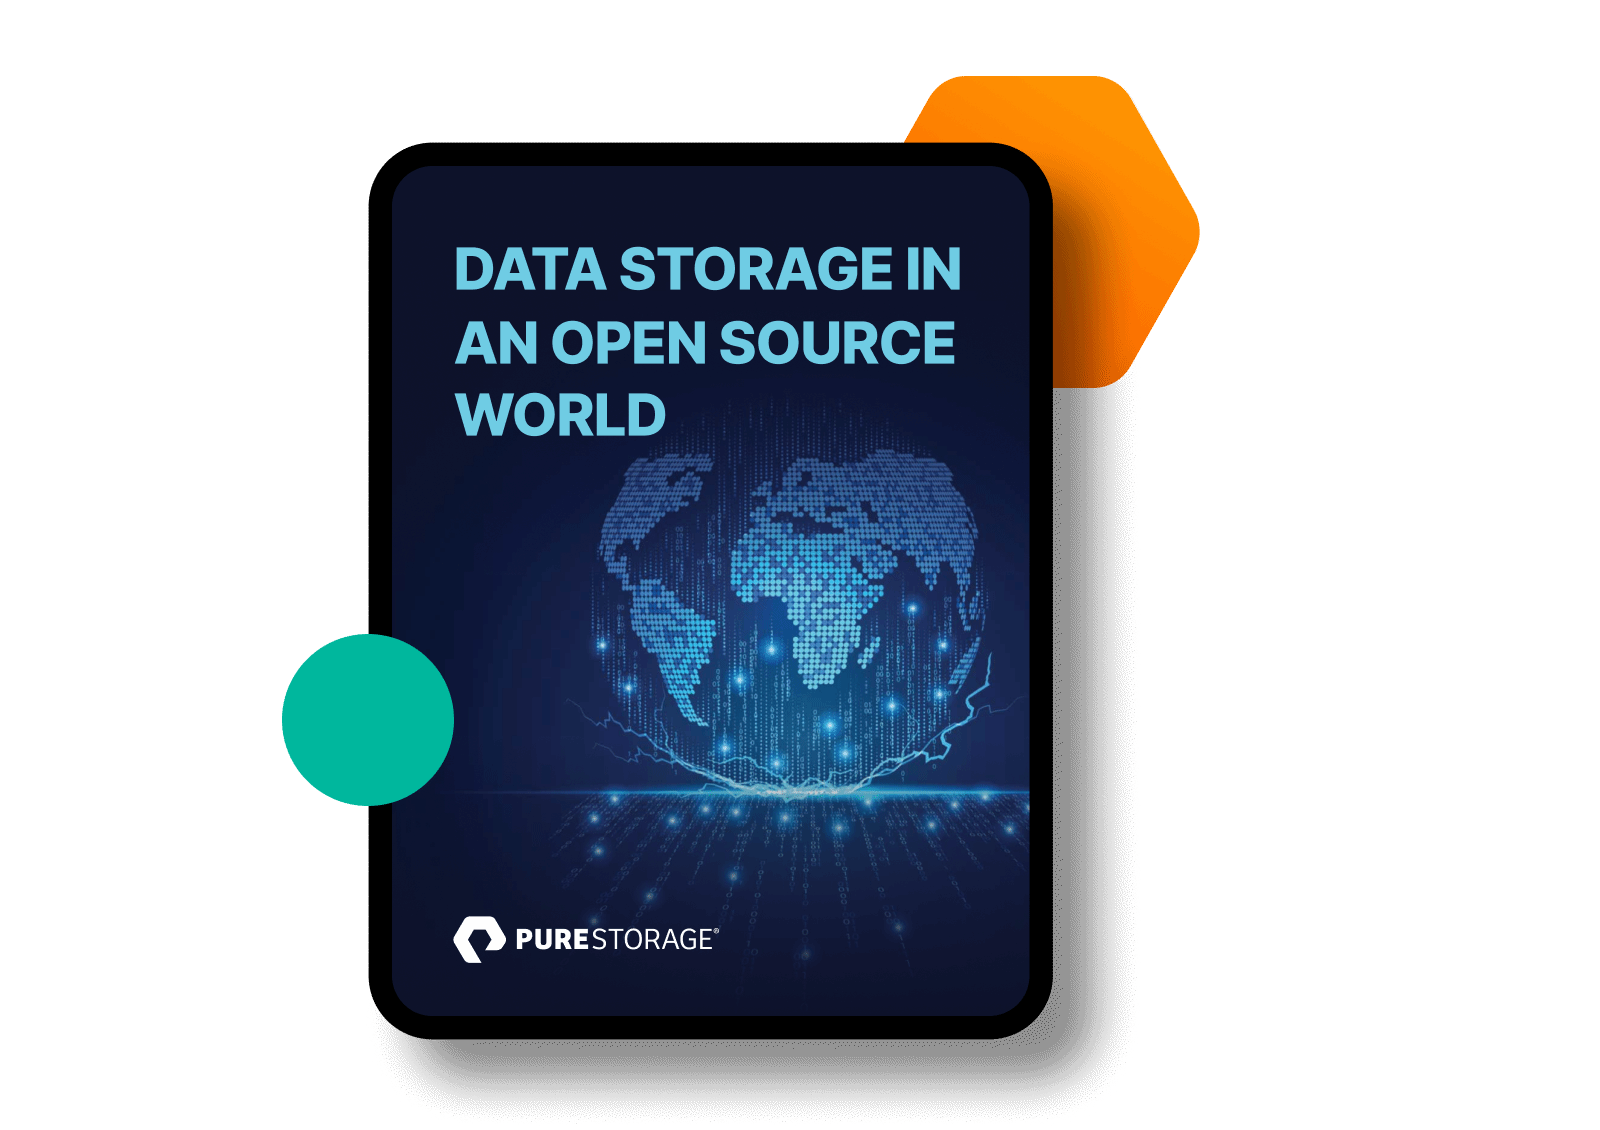 Data Storage in an Open Source World